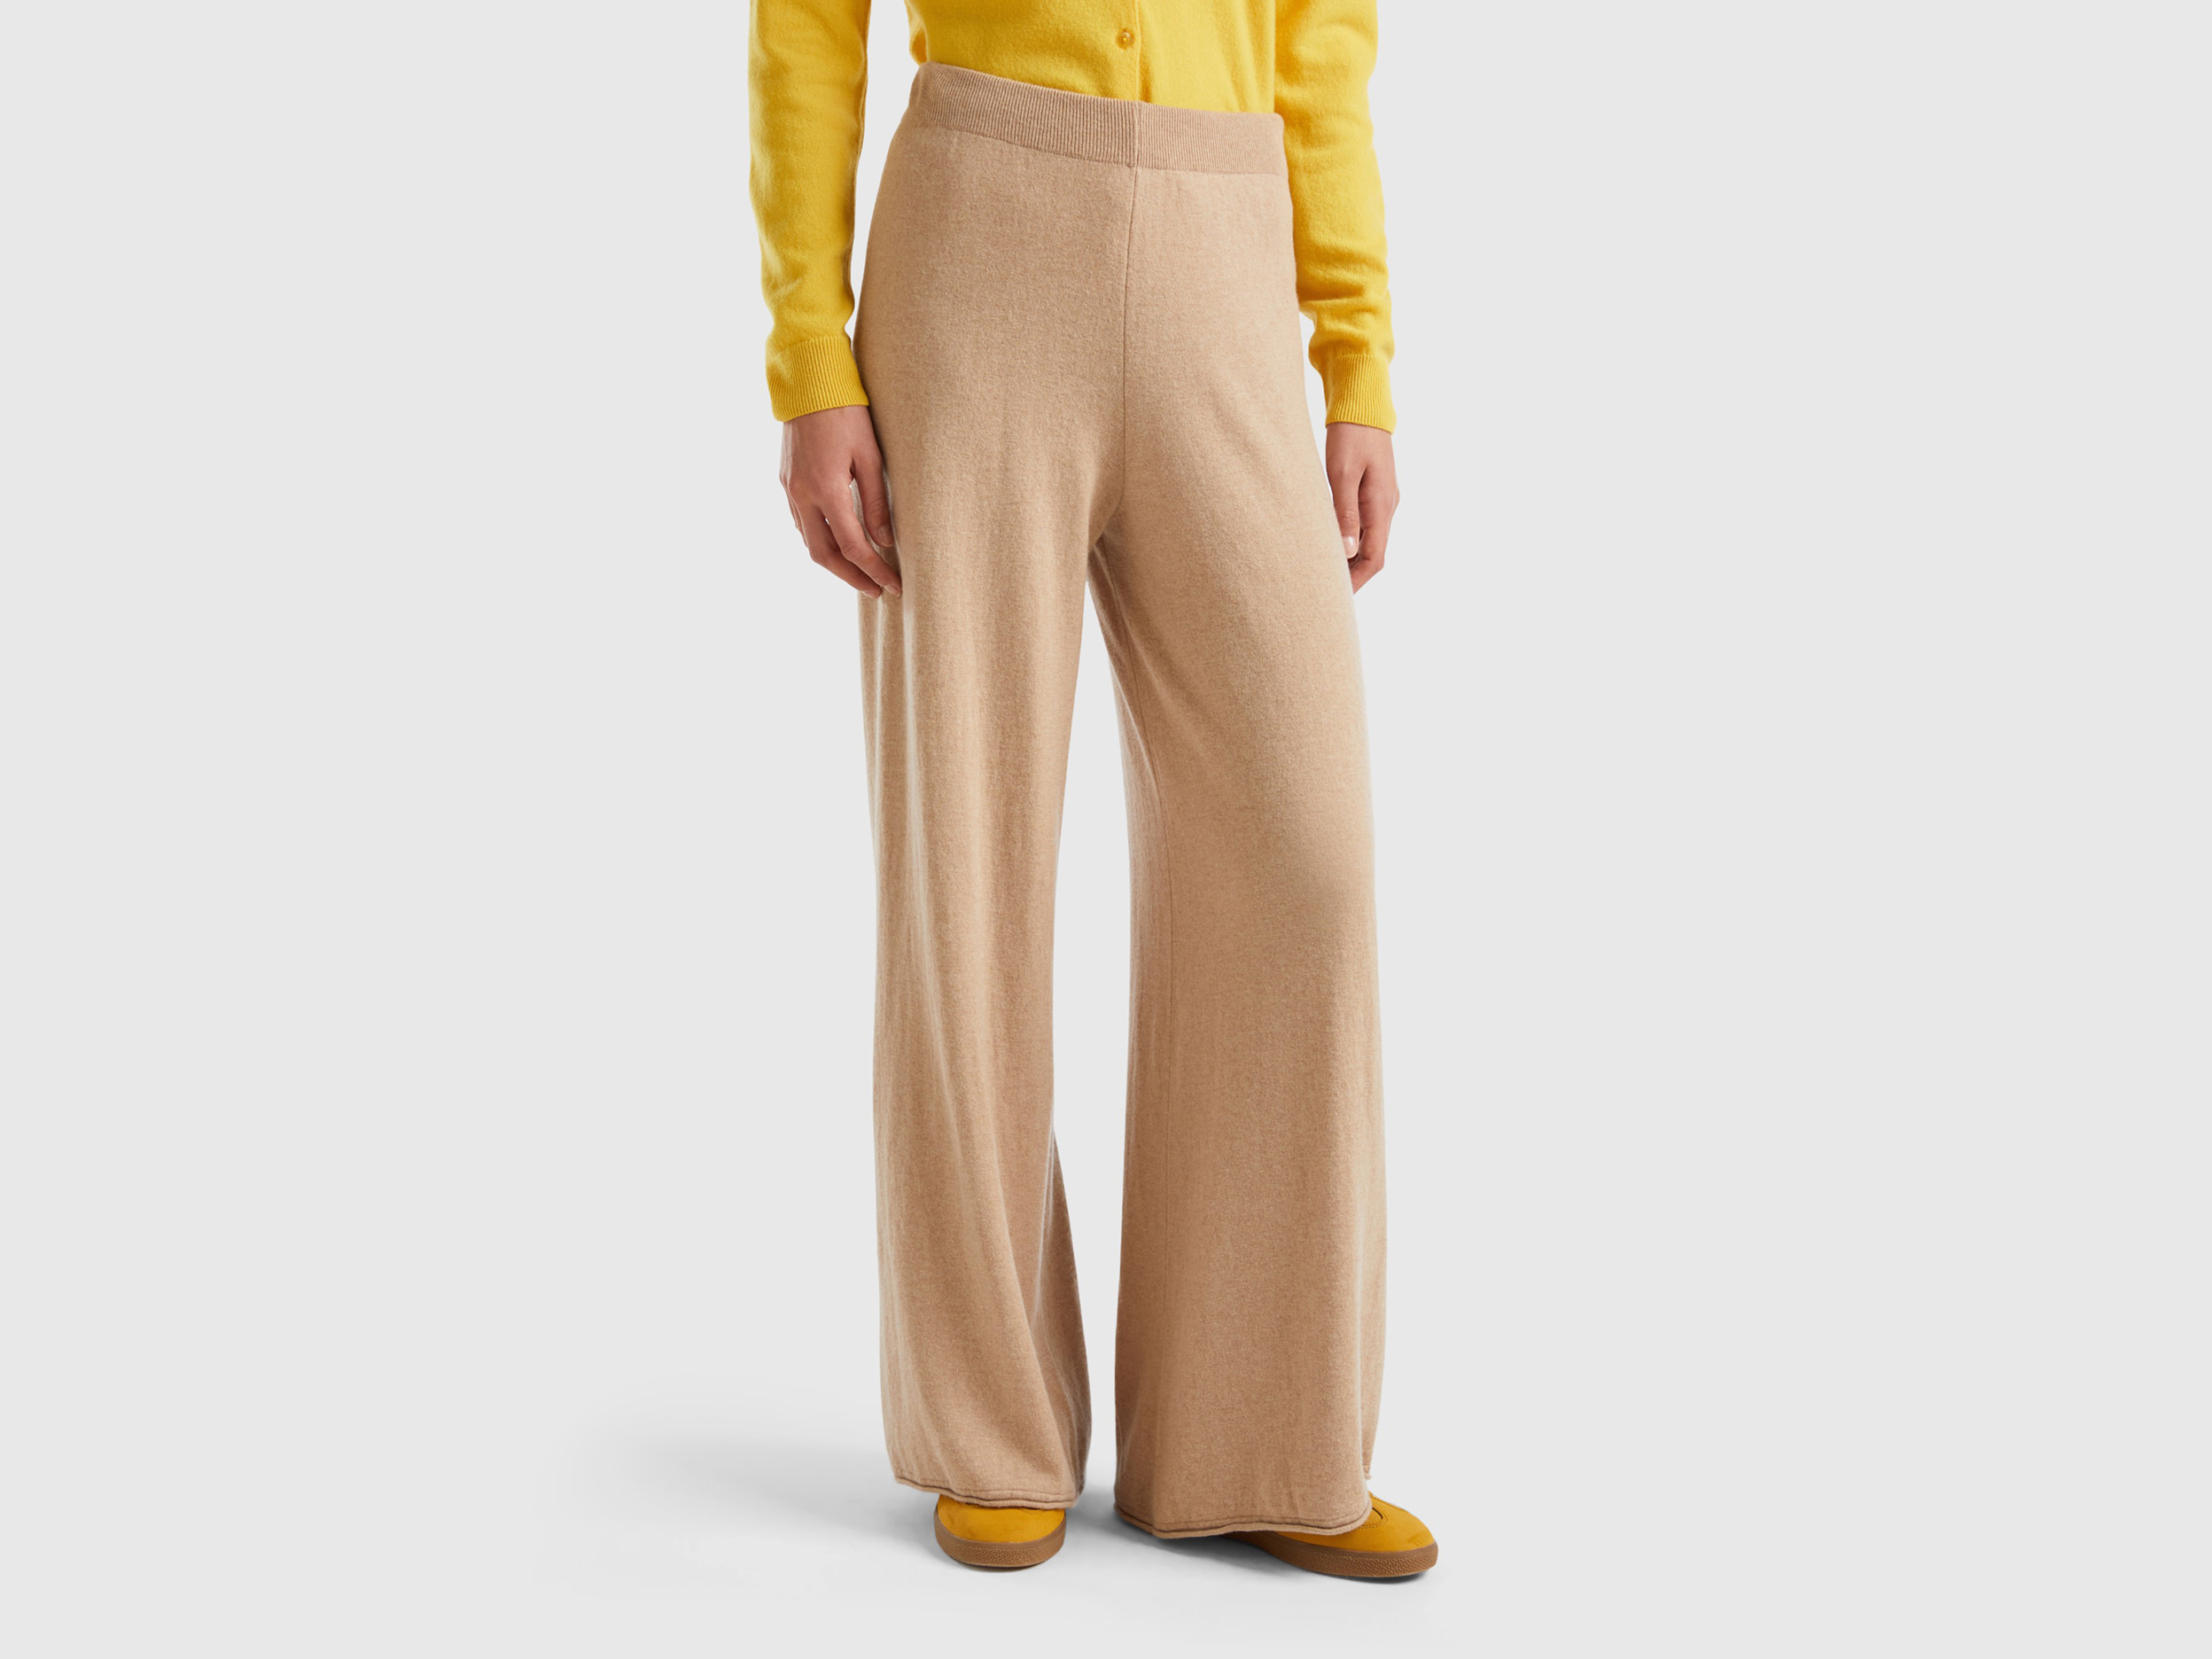 Benetton, Beige Wide Leg Trousers In Cashmere And Wool Blend, size L, Beige, Women